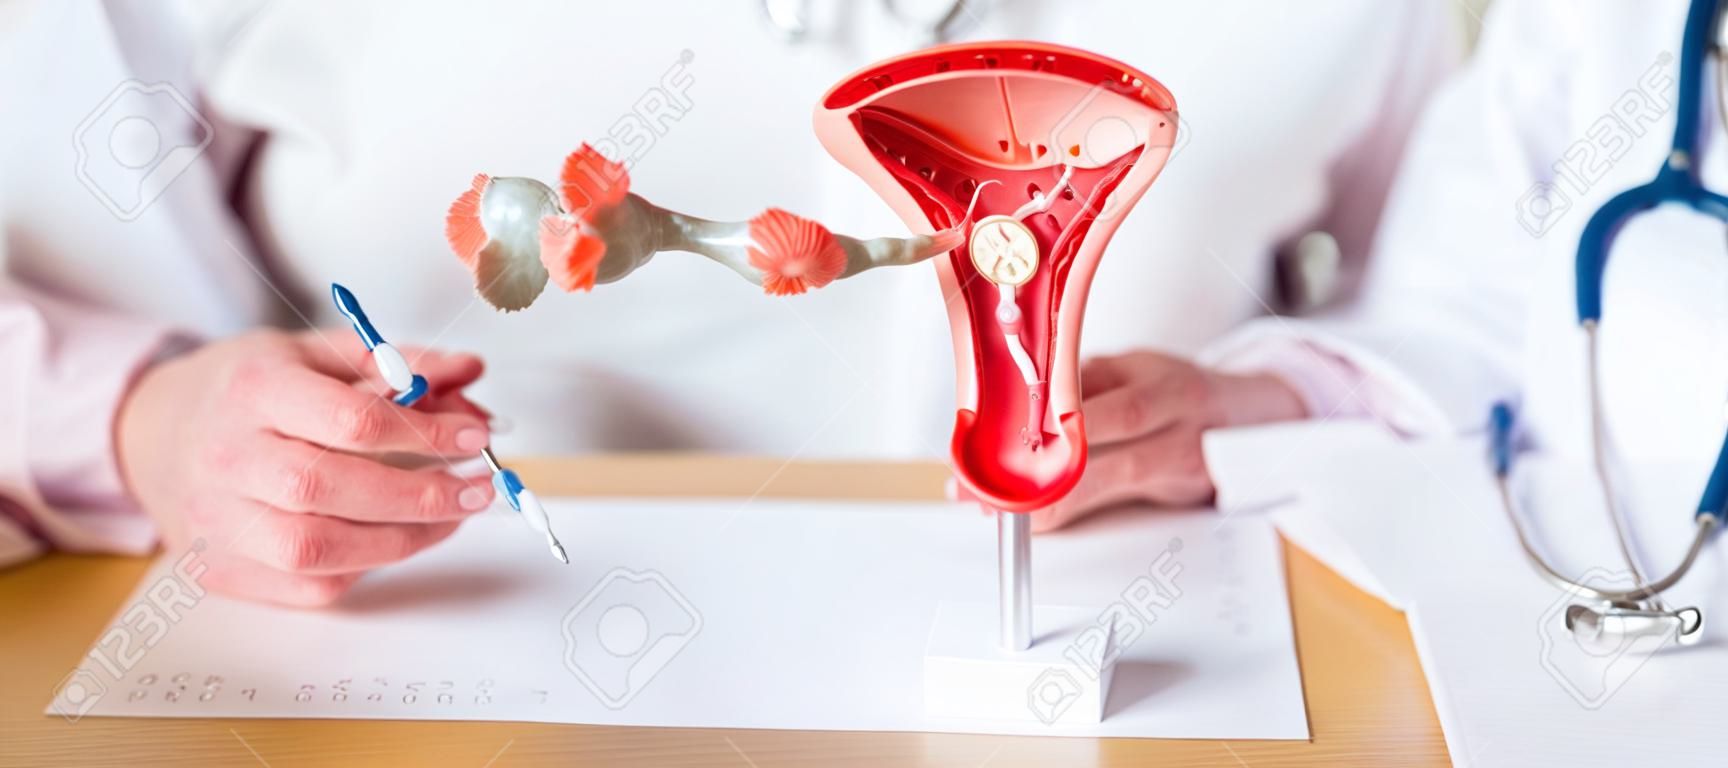 Lekarz z macicą i jajnikami model anatomiczny rak jajnika i szyjki macicy zaburzenie szyjki macicy endometrioza histerektomia mięśniaki macicy układ rozrodczy koncepcja ciąży i zdrowia